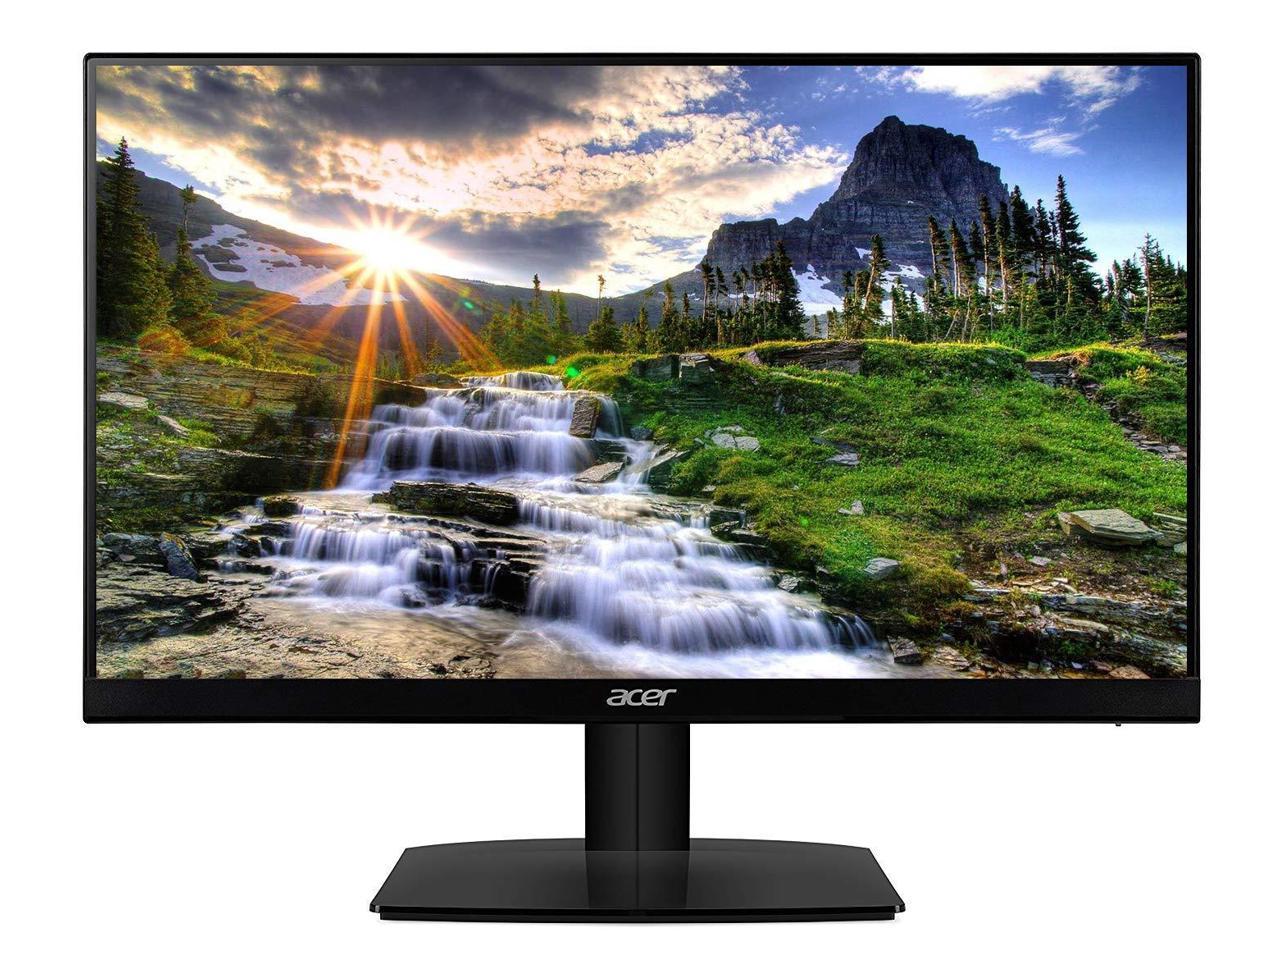 Acer HA220Q 21.5" LED LCD Monitor - 16:9 - 4 ms - Newegg.com